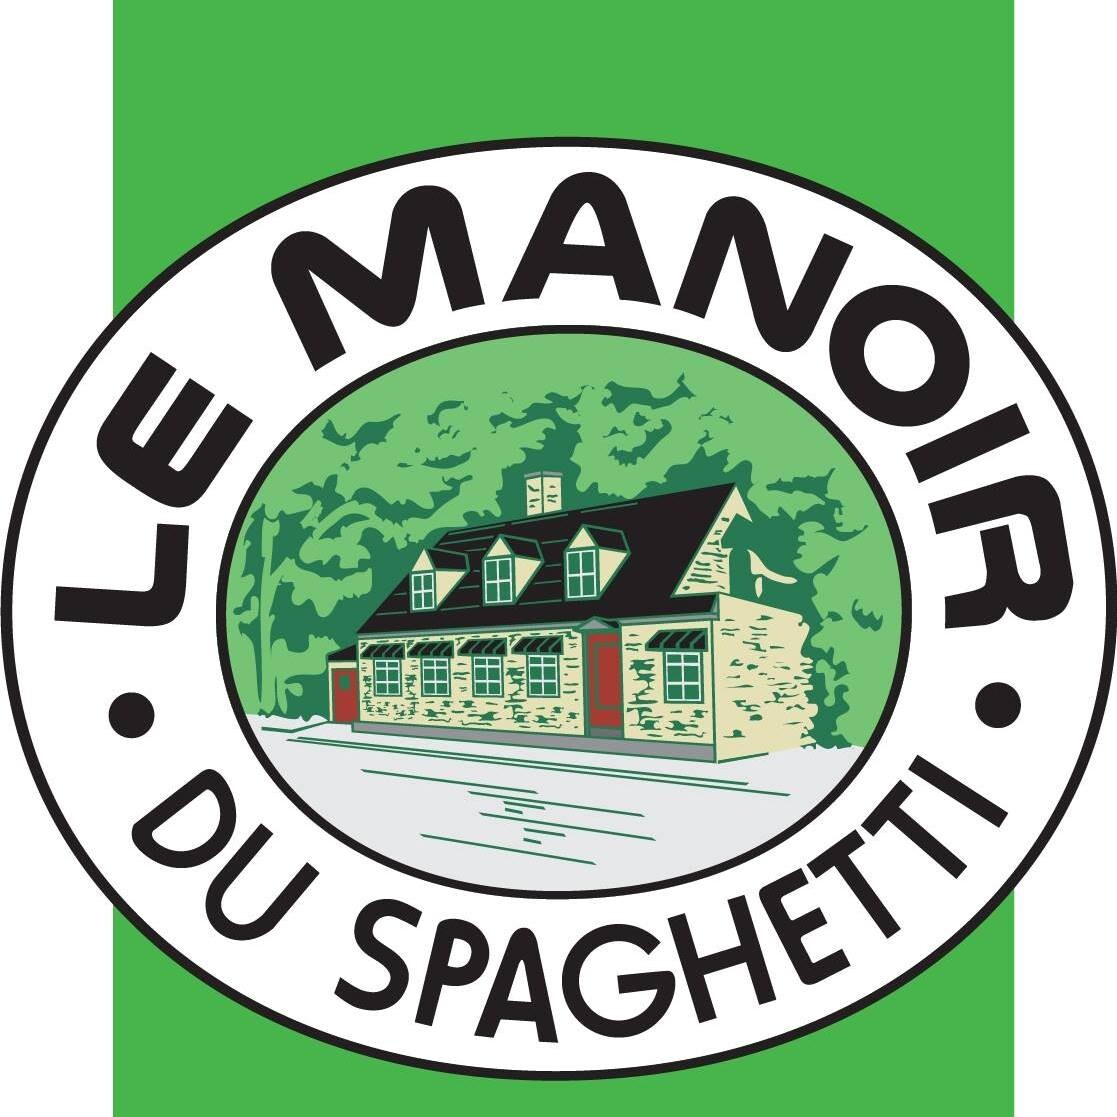 Le Manoir du spaghetti